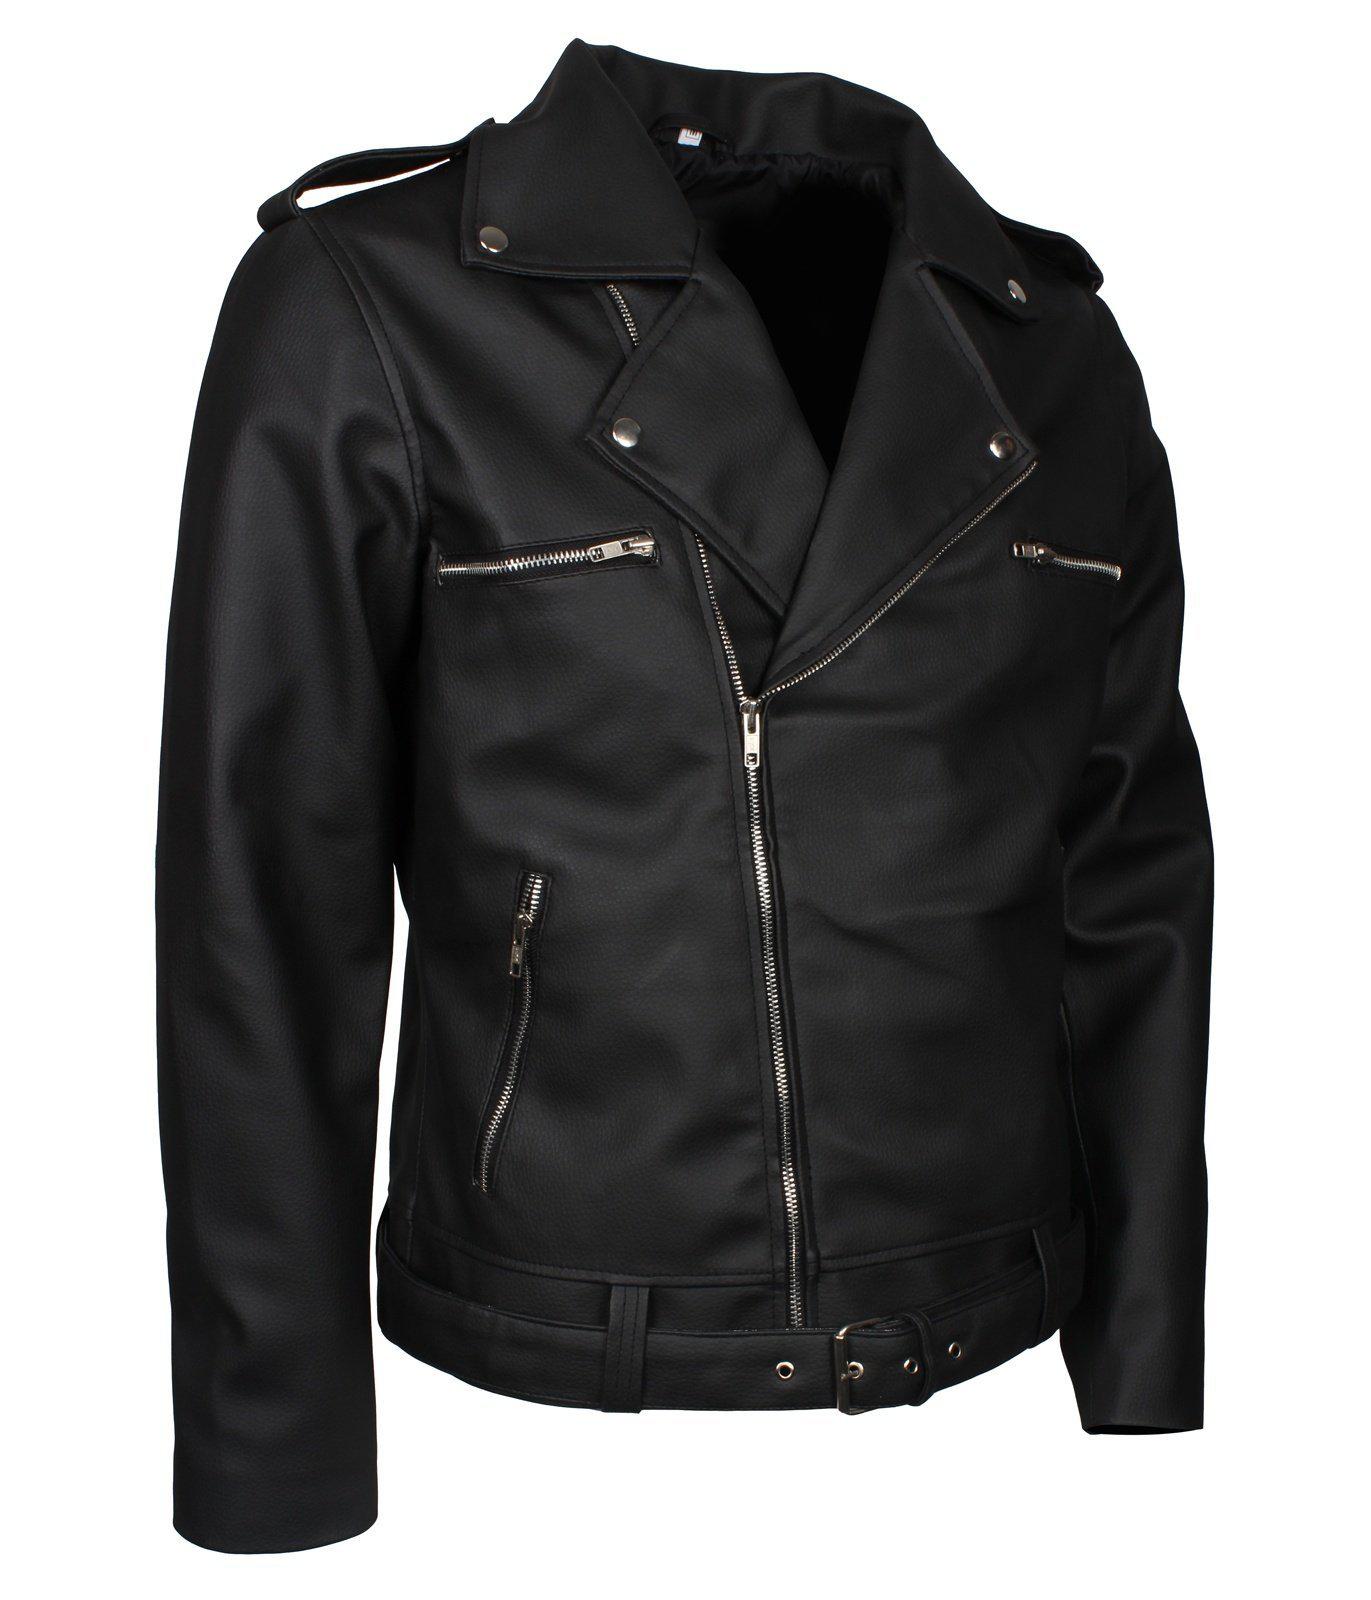 Negan Jacket from The Walking Dead in Faux Leather – AlexGear